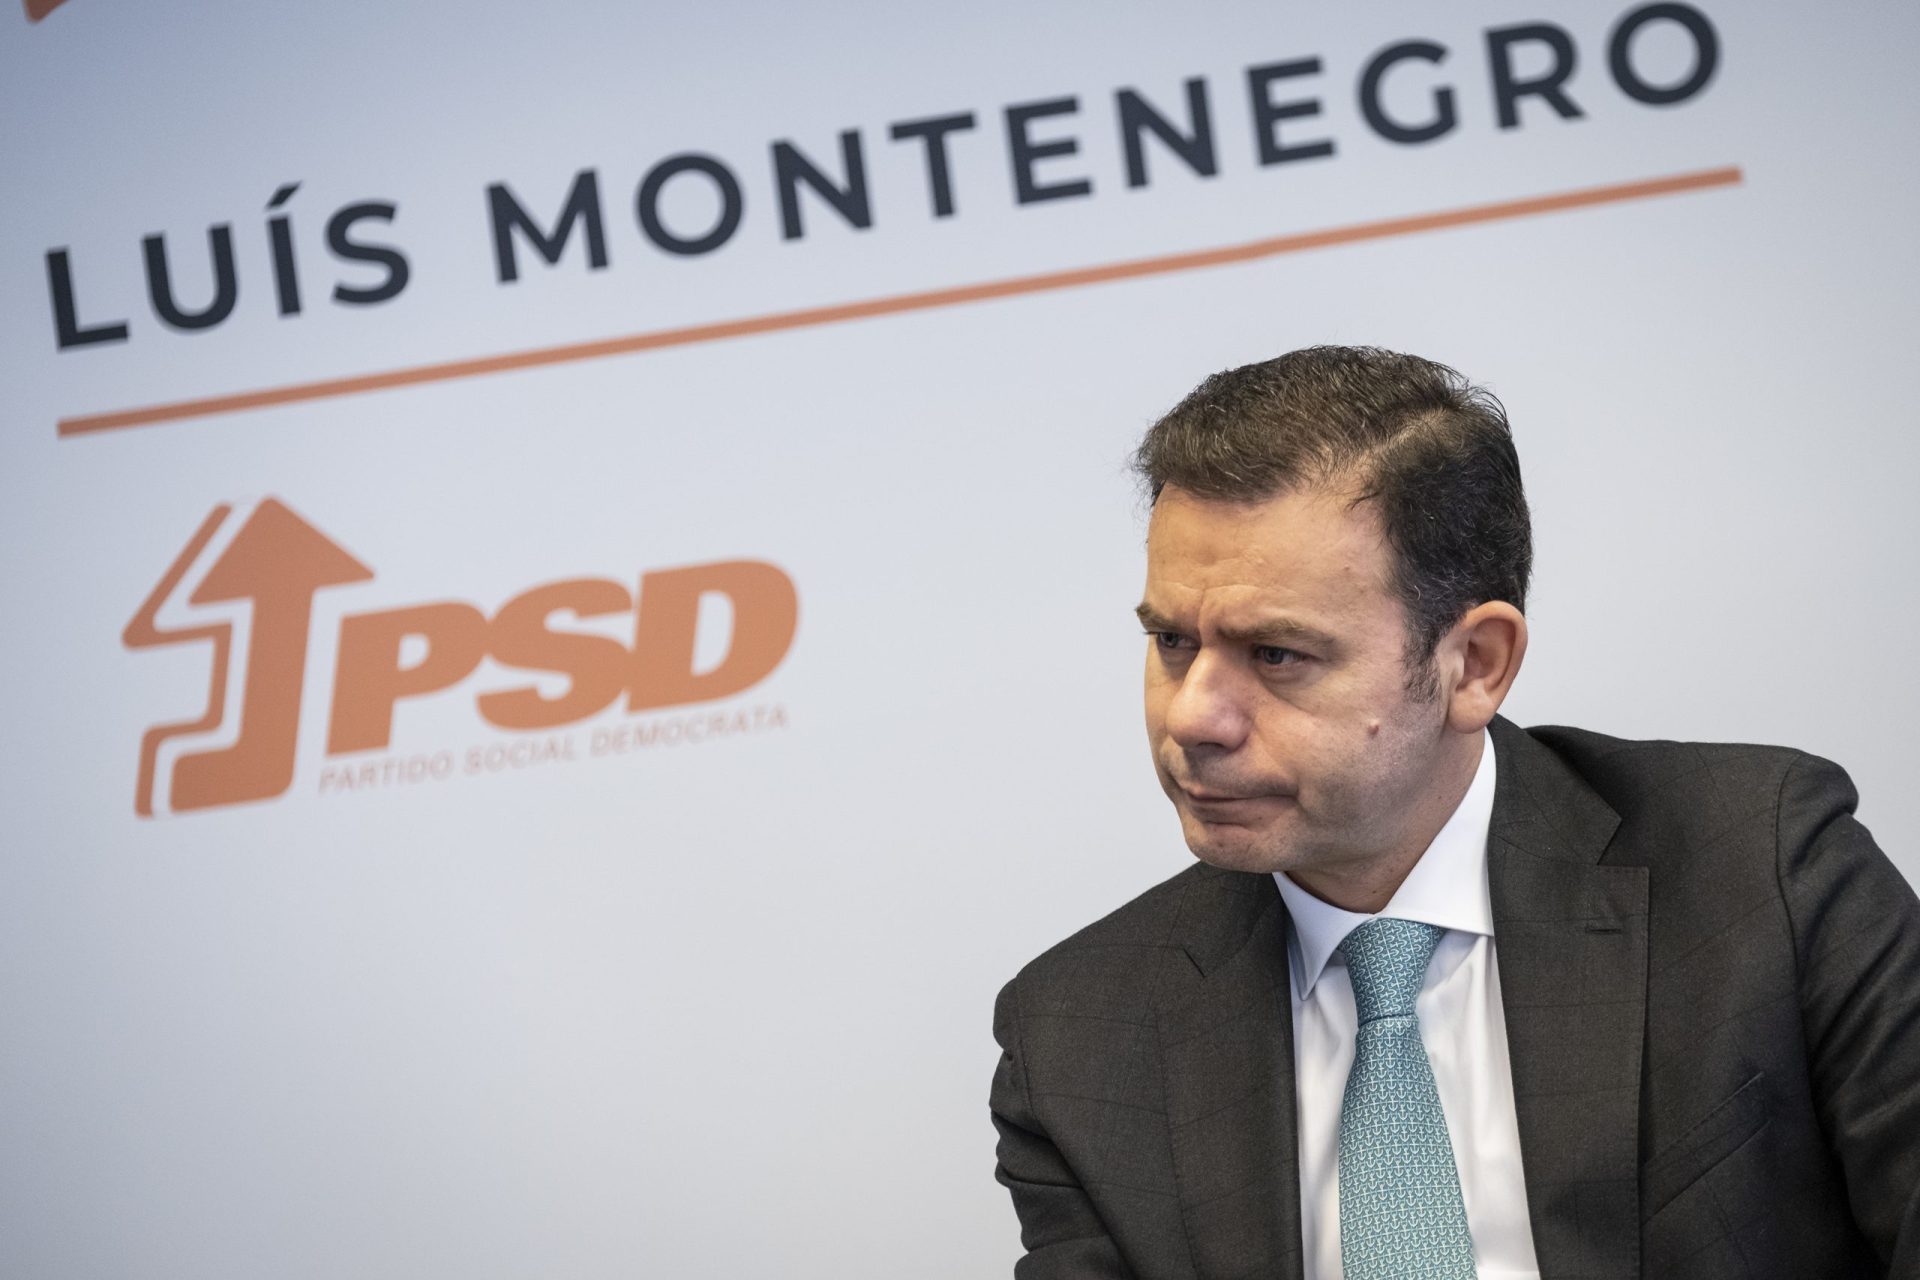 PSD. Montenegro diz que regresso de Passos à política será “sempre motivo de satisfação”